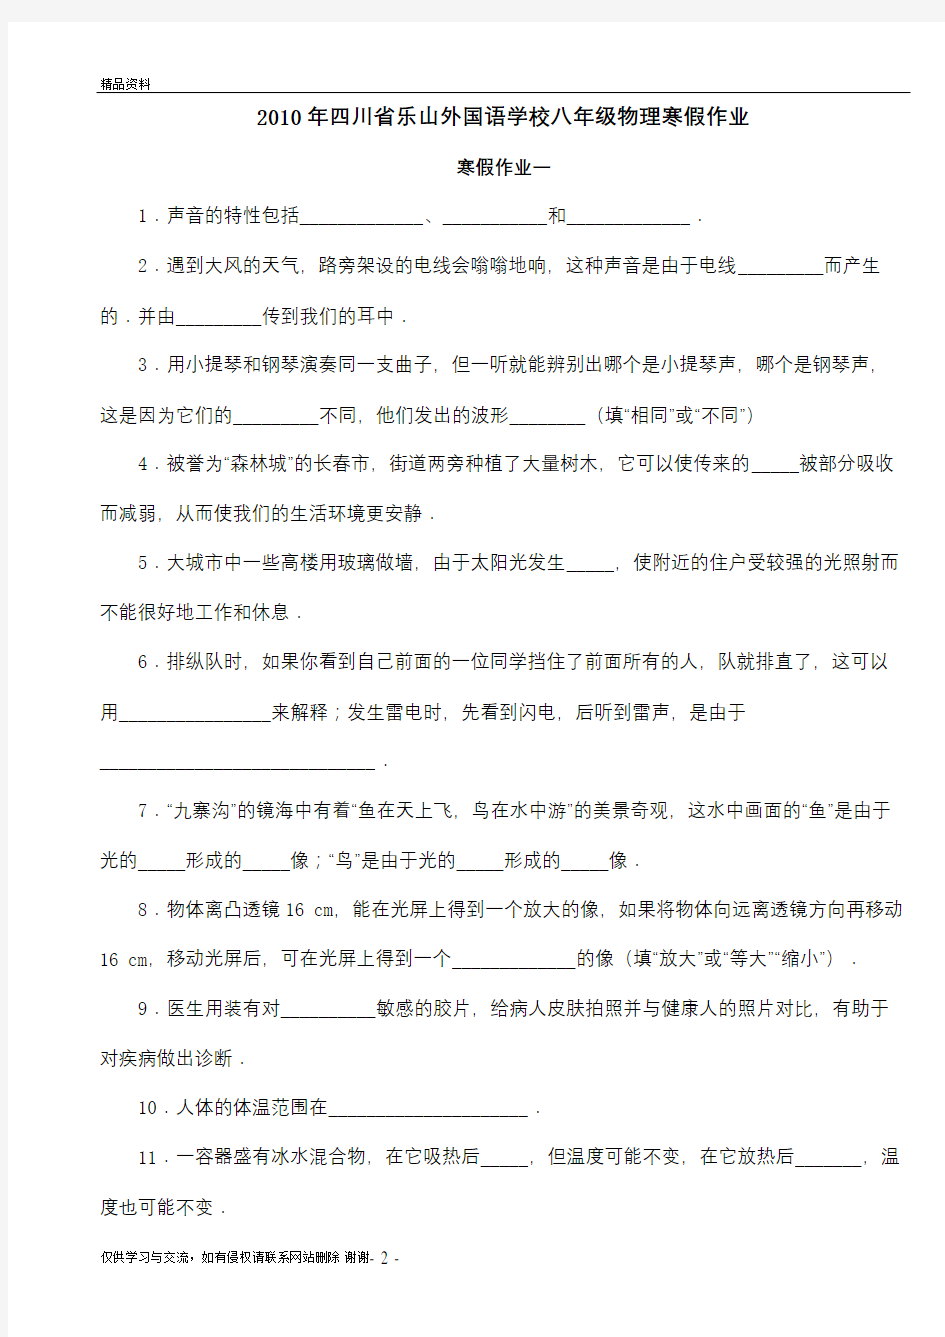 四川省乐山外国语学校八年级寒假作业物理试卷(无答案)教学资料